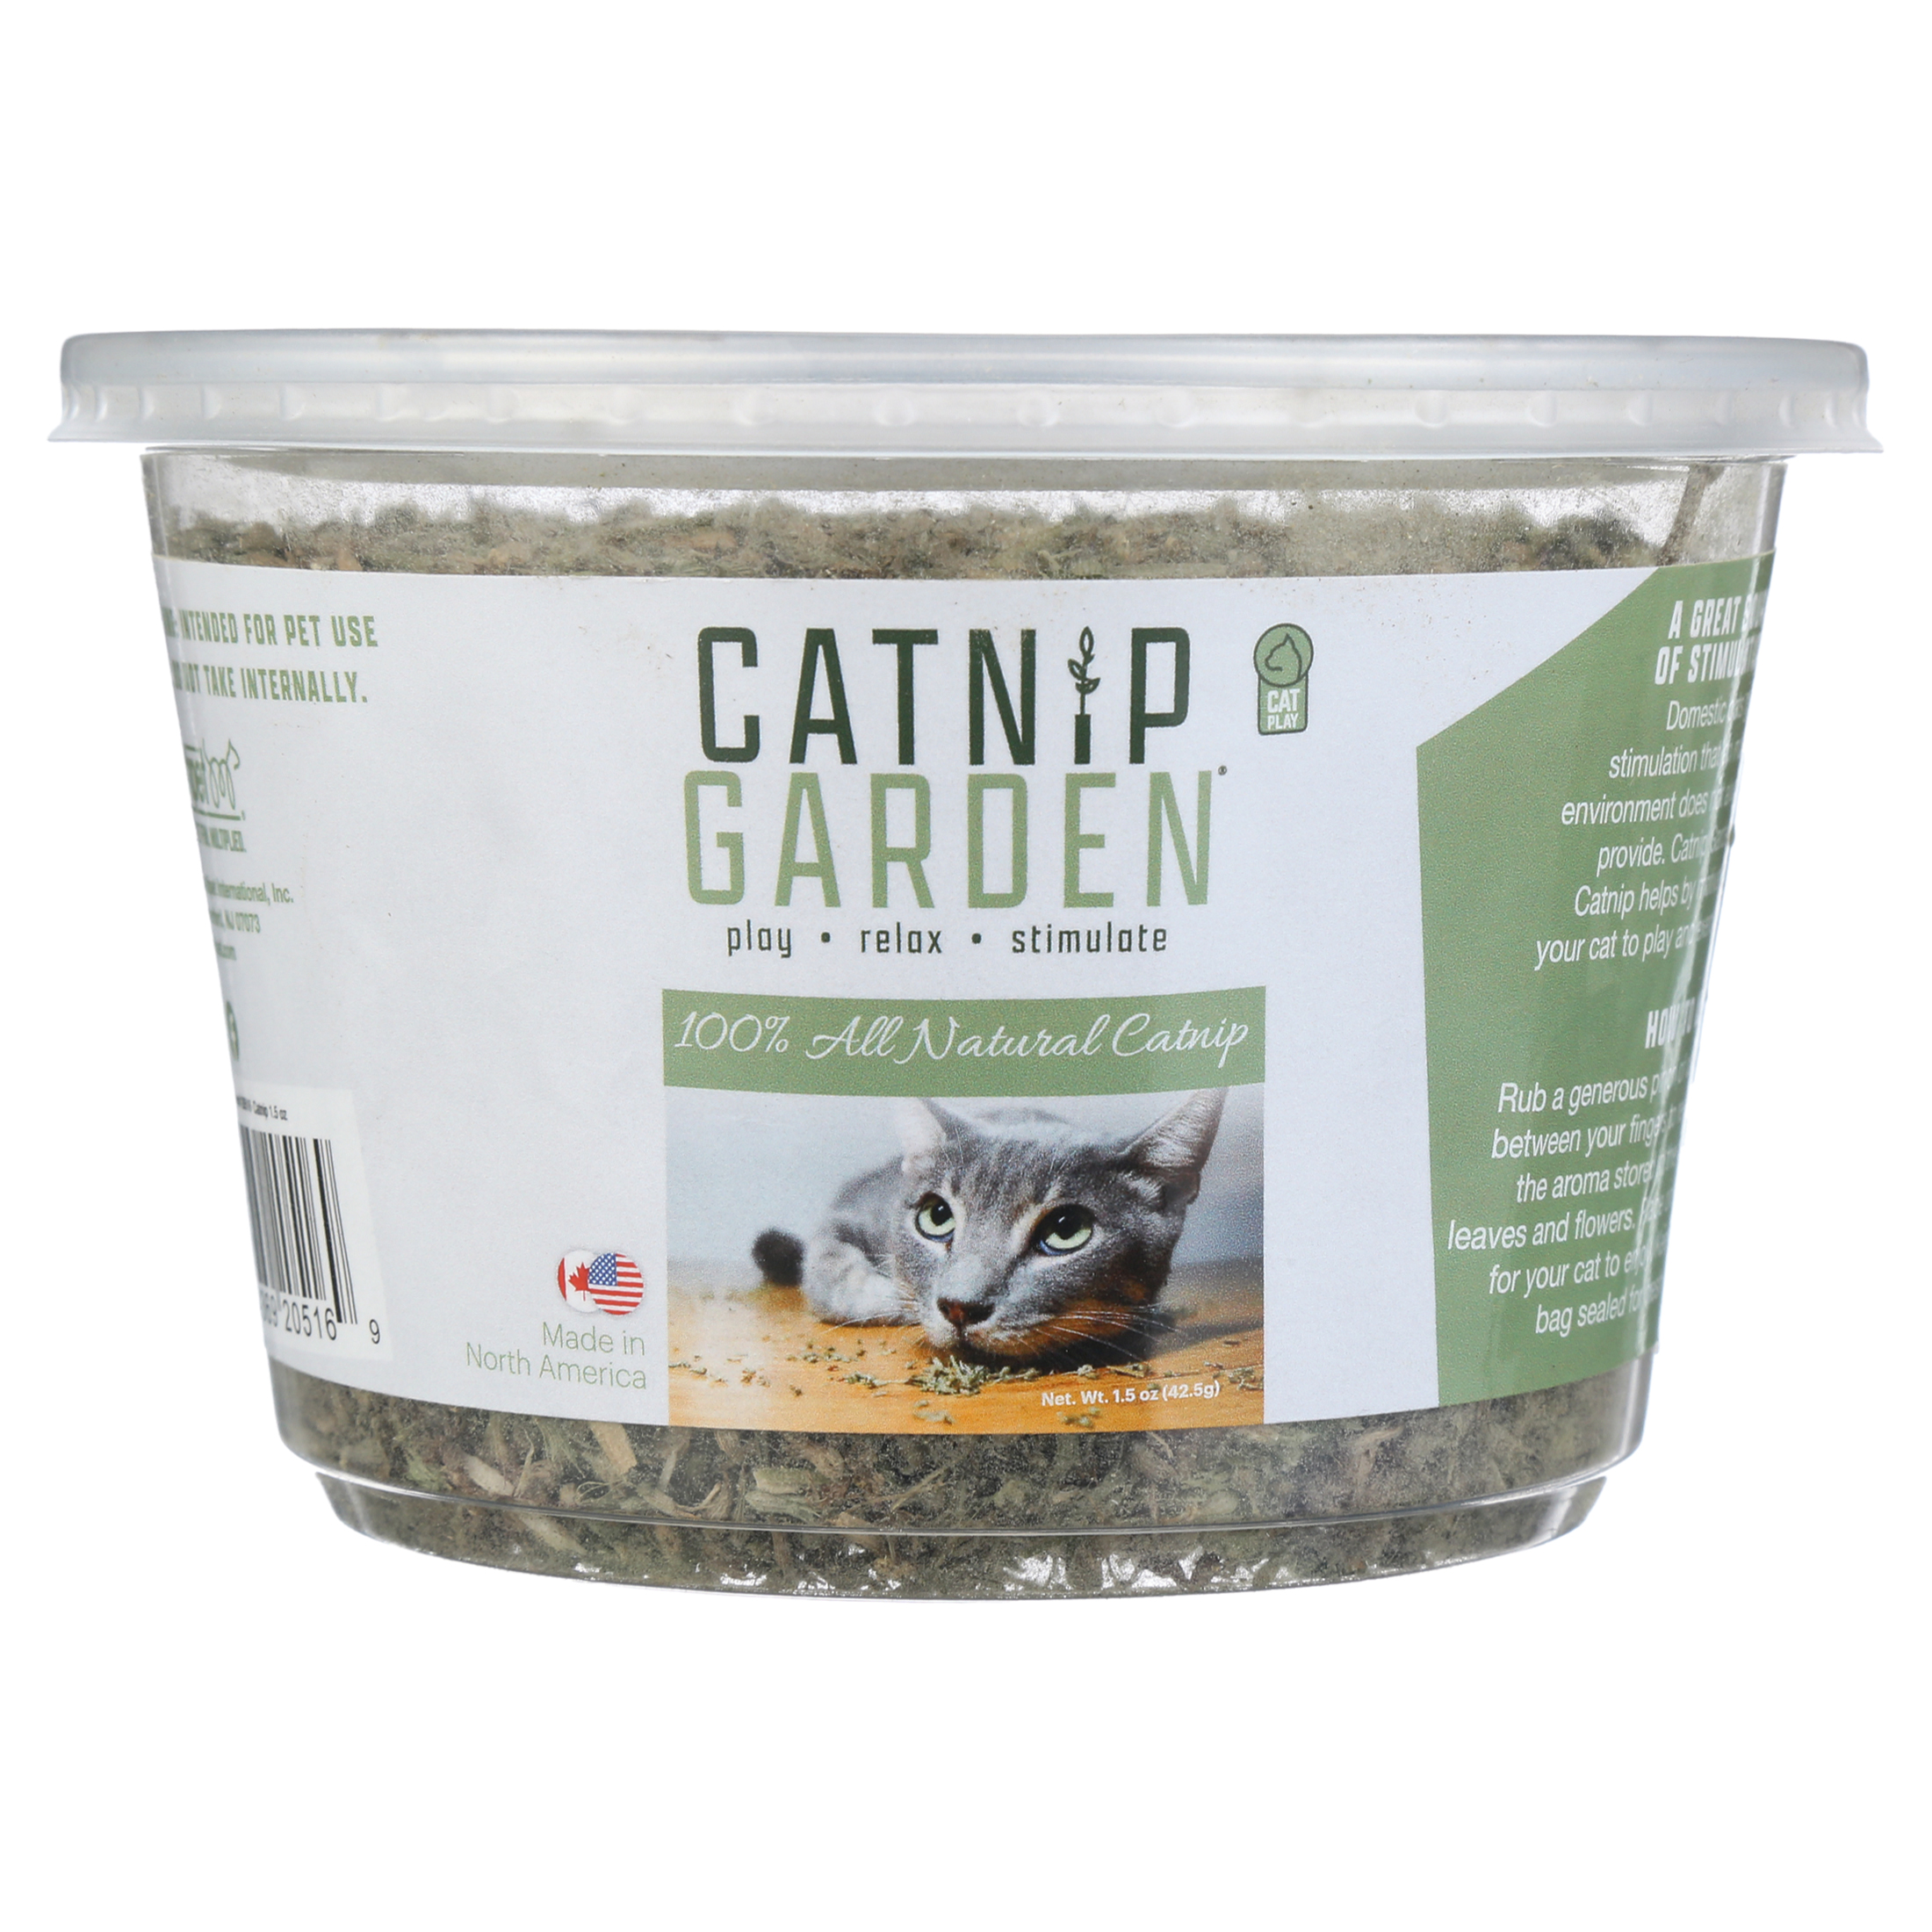 Catnip Garden™ Cup - 1.5oz. - image 1 of 6